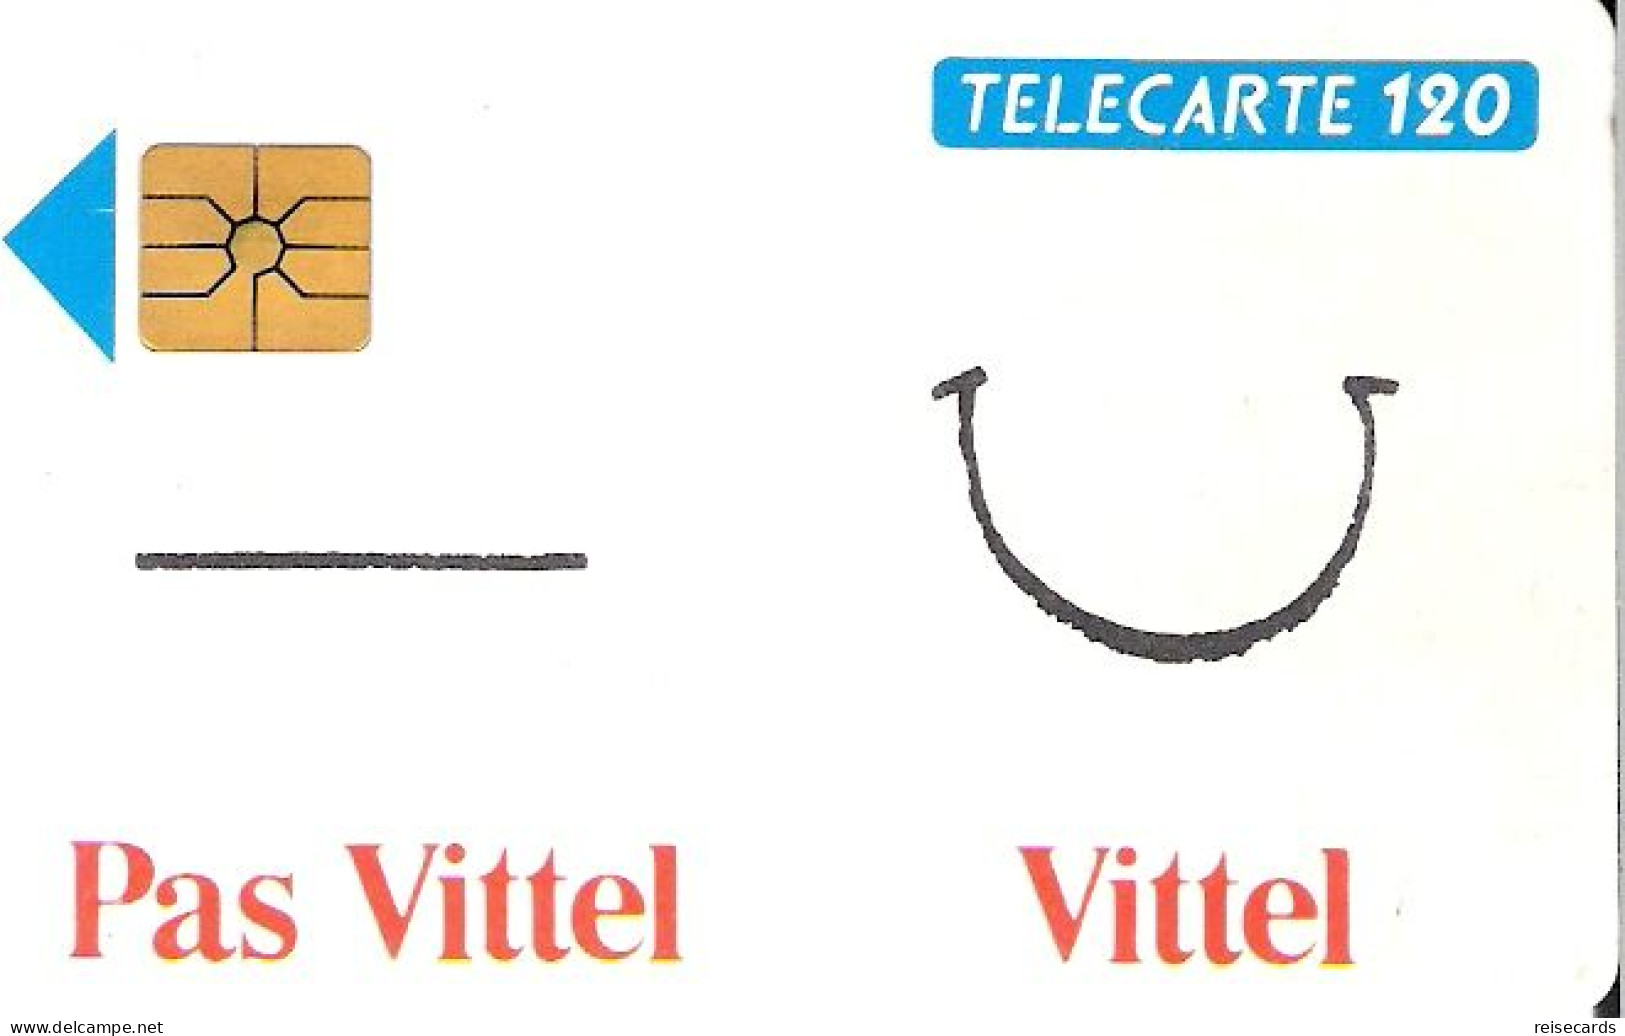 France: France Telecom 03.93 F334 988 Vittel (Nestlé) - 1993